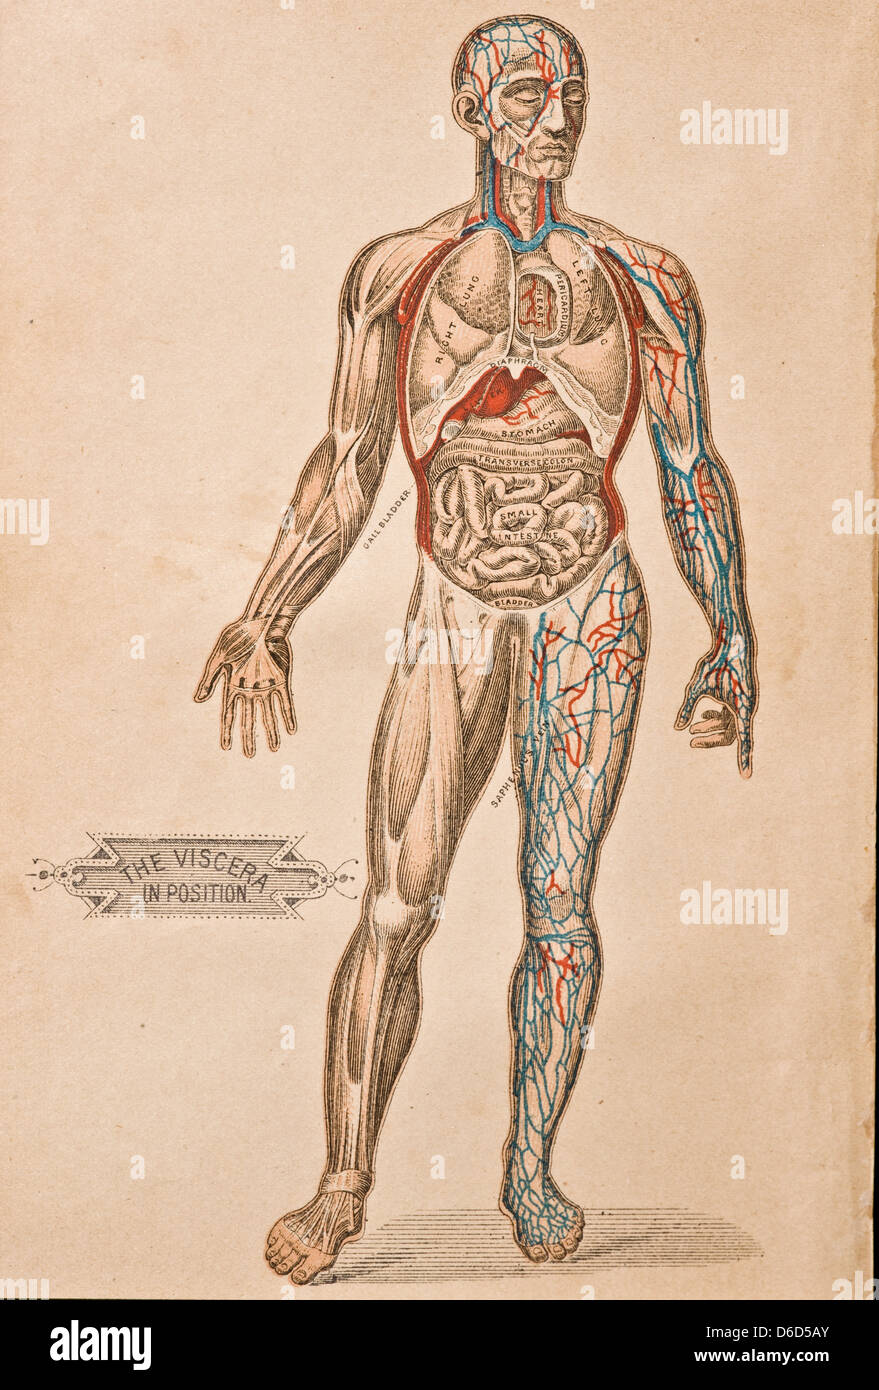 Eine Antike Darstellung der Organe und Arterien in den menschlichen Körper. Stockfoto